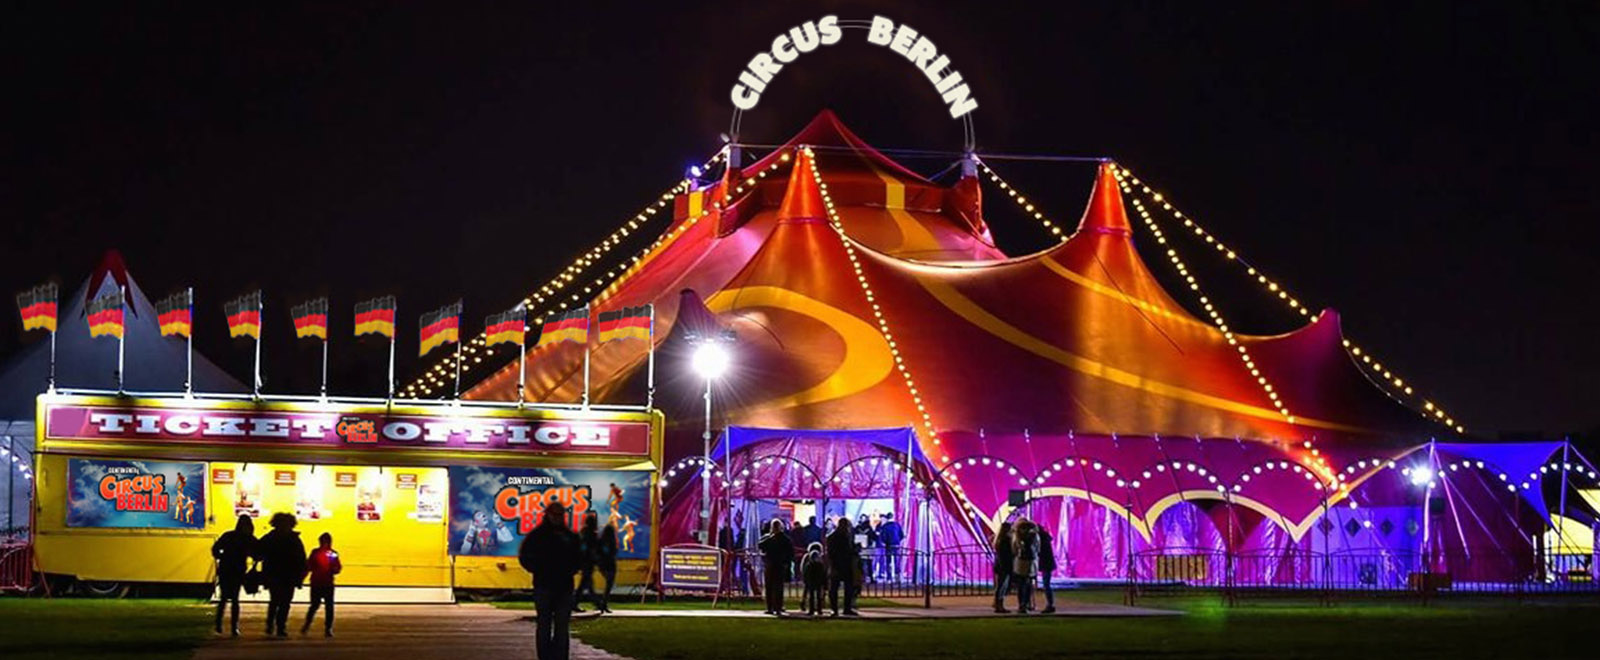 circus berlin tour dates